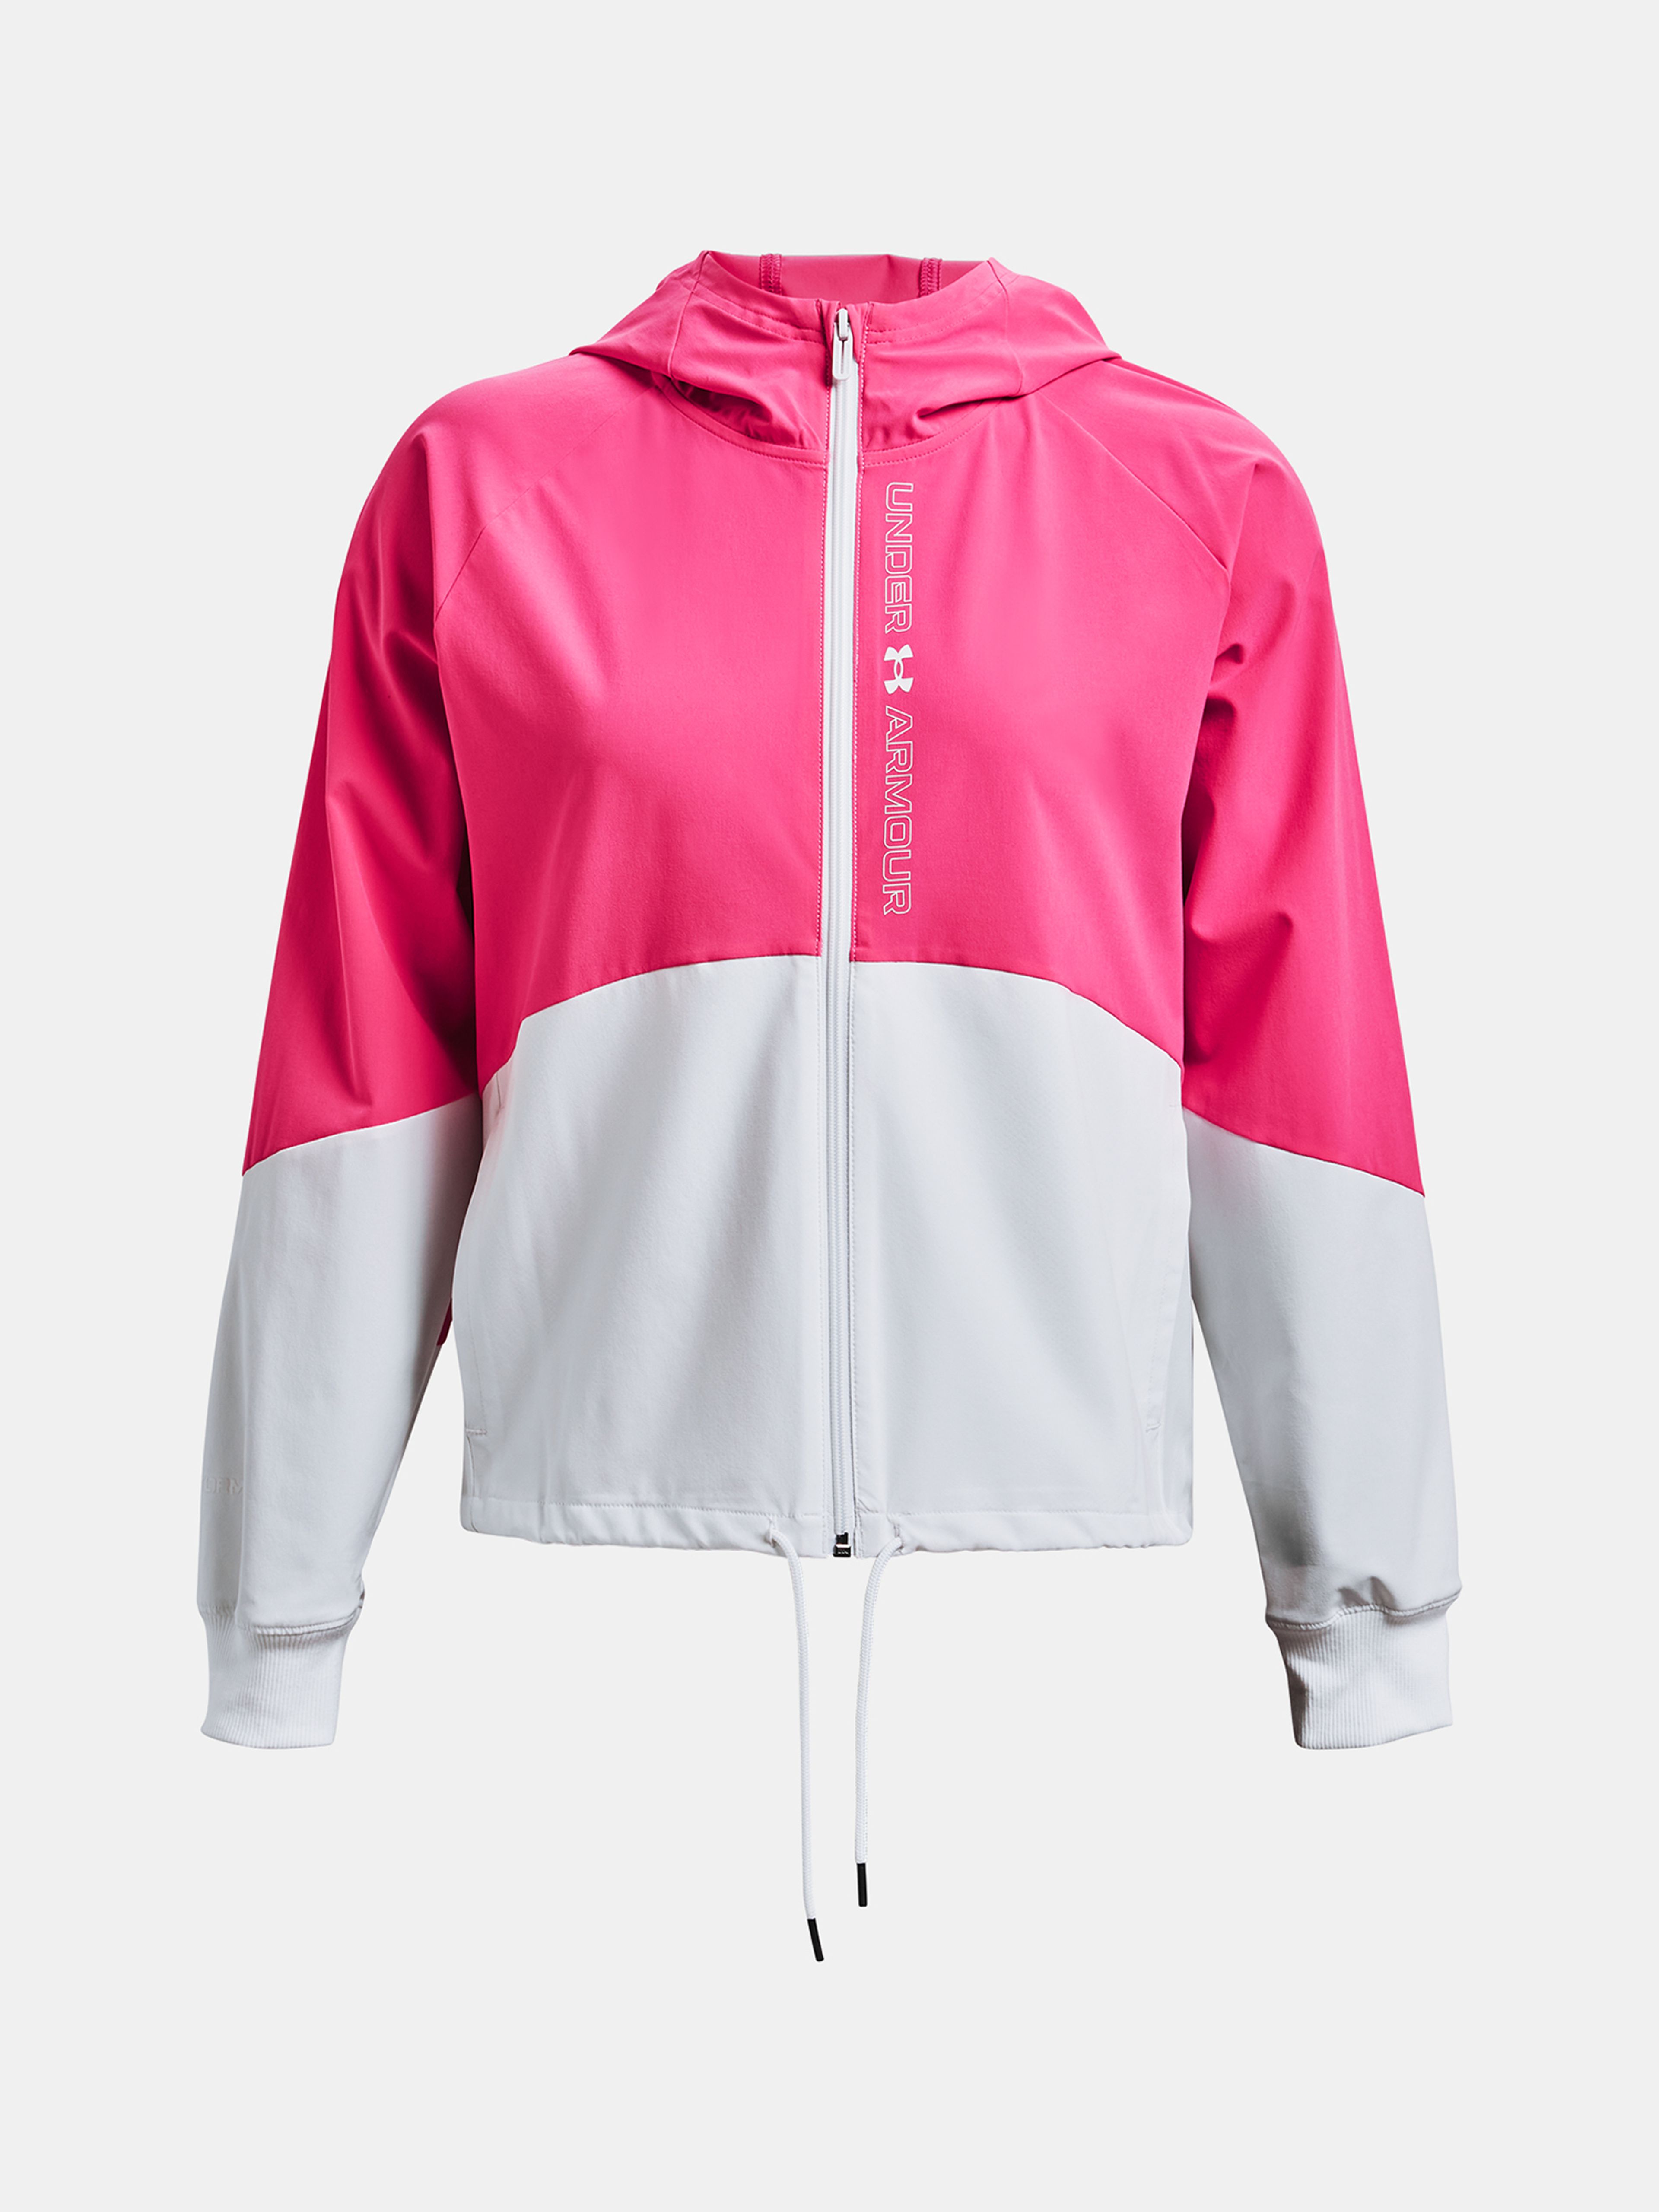  Woven FZ Jacket, white - women's jacket - UNDER ARMOUR -  49.50 € - outdoorové oblečení a vybavení shop